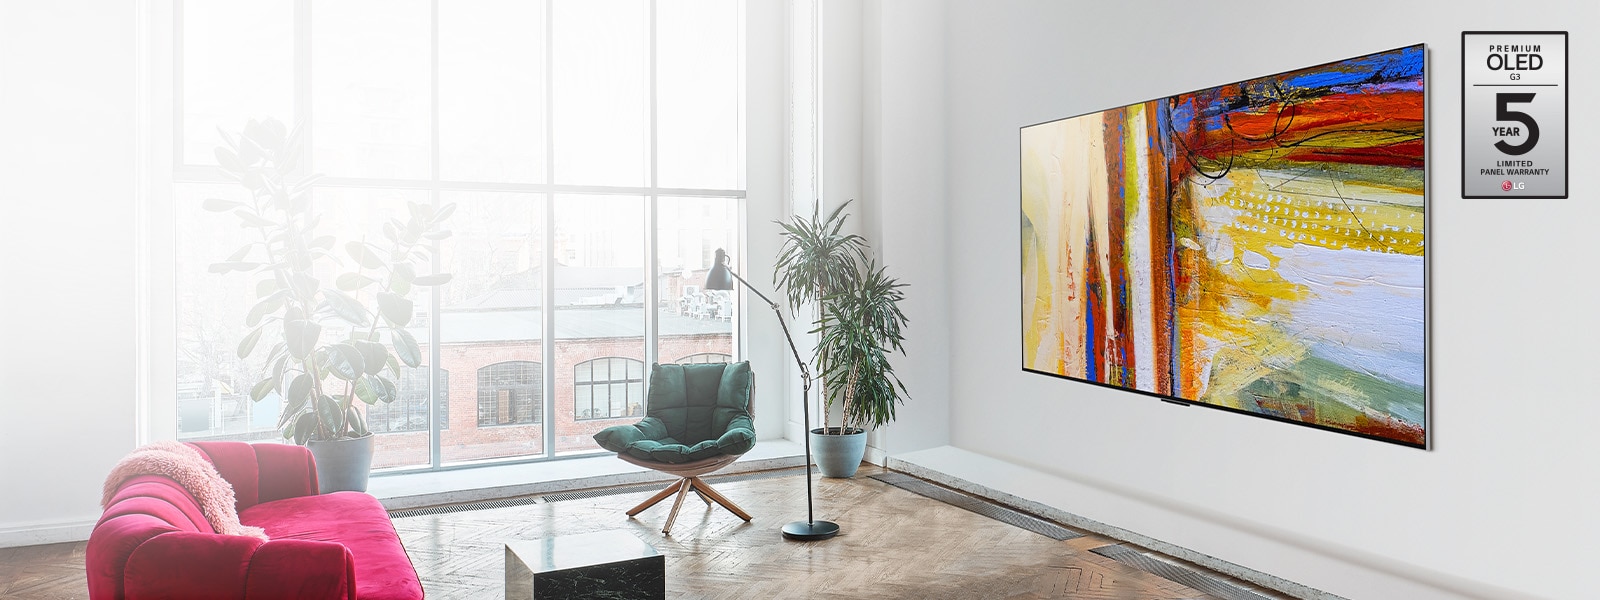 Obrázek televizoru LG OLED G3 ve světlé a živé místnosti, který zobrazuje barevné abstraktní umělecké dílo.